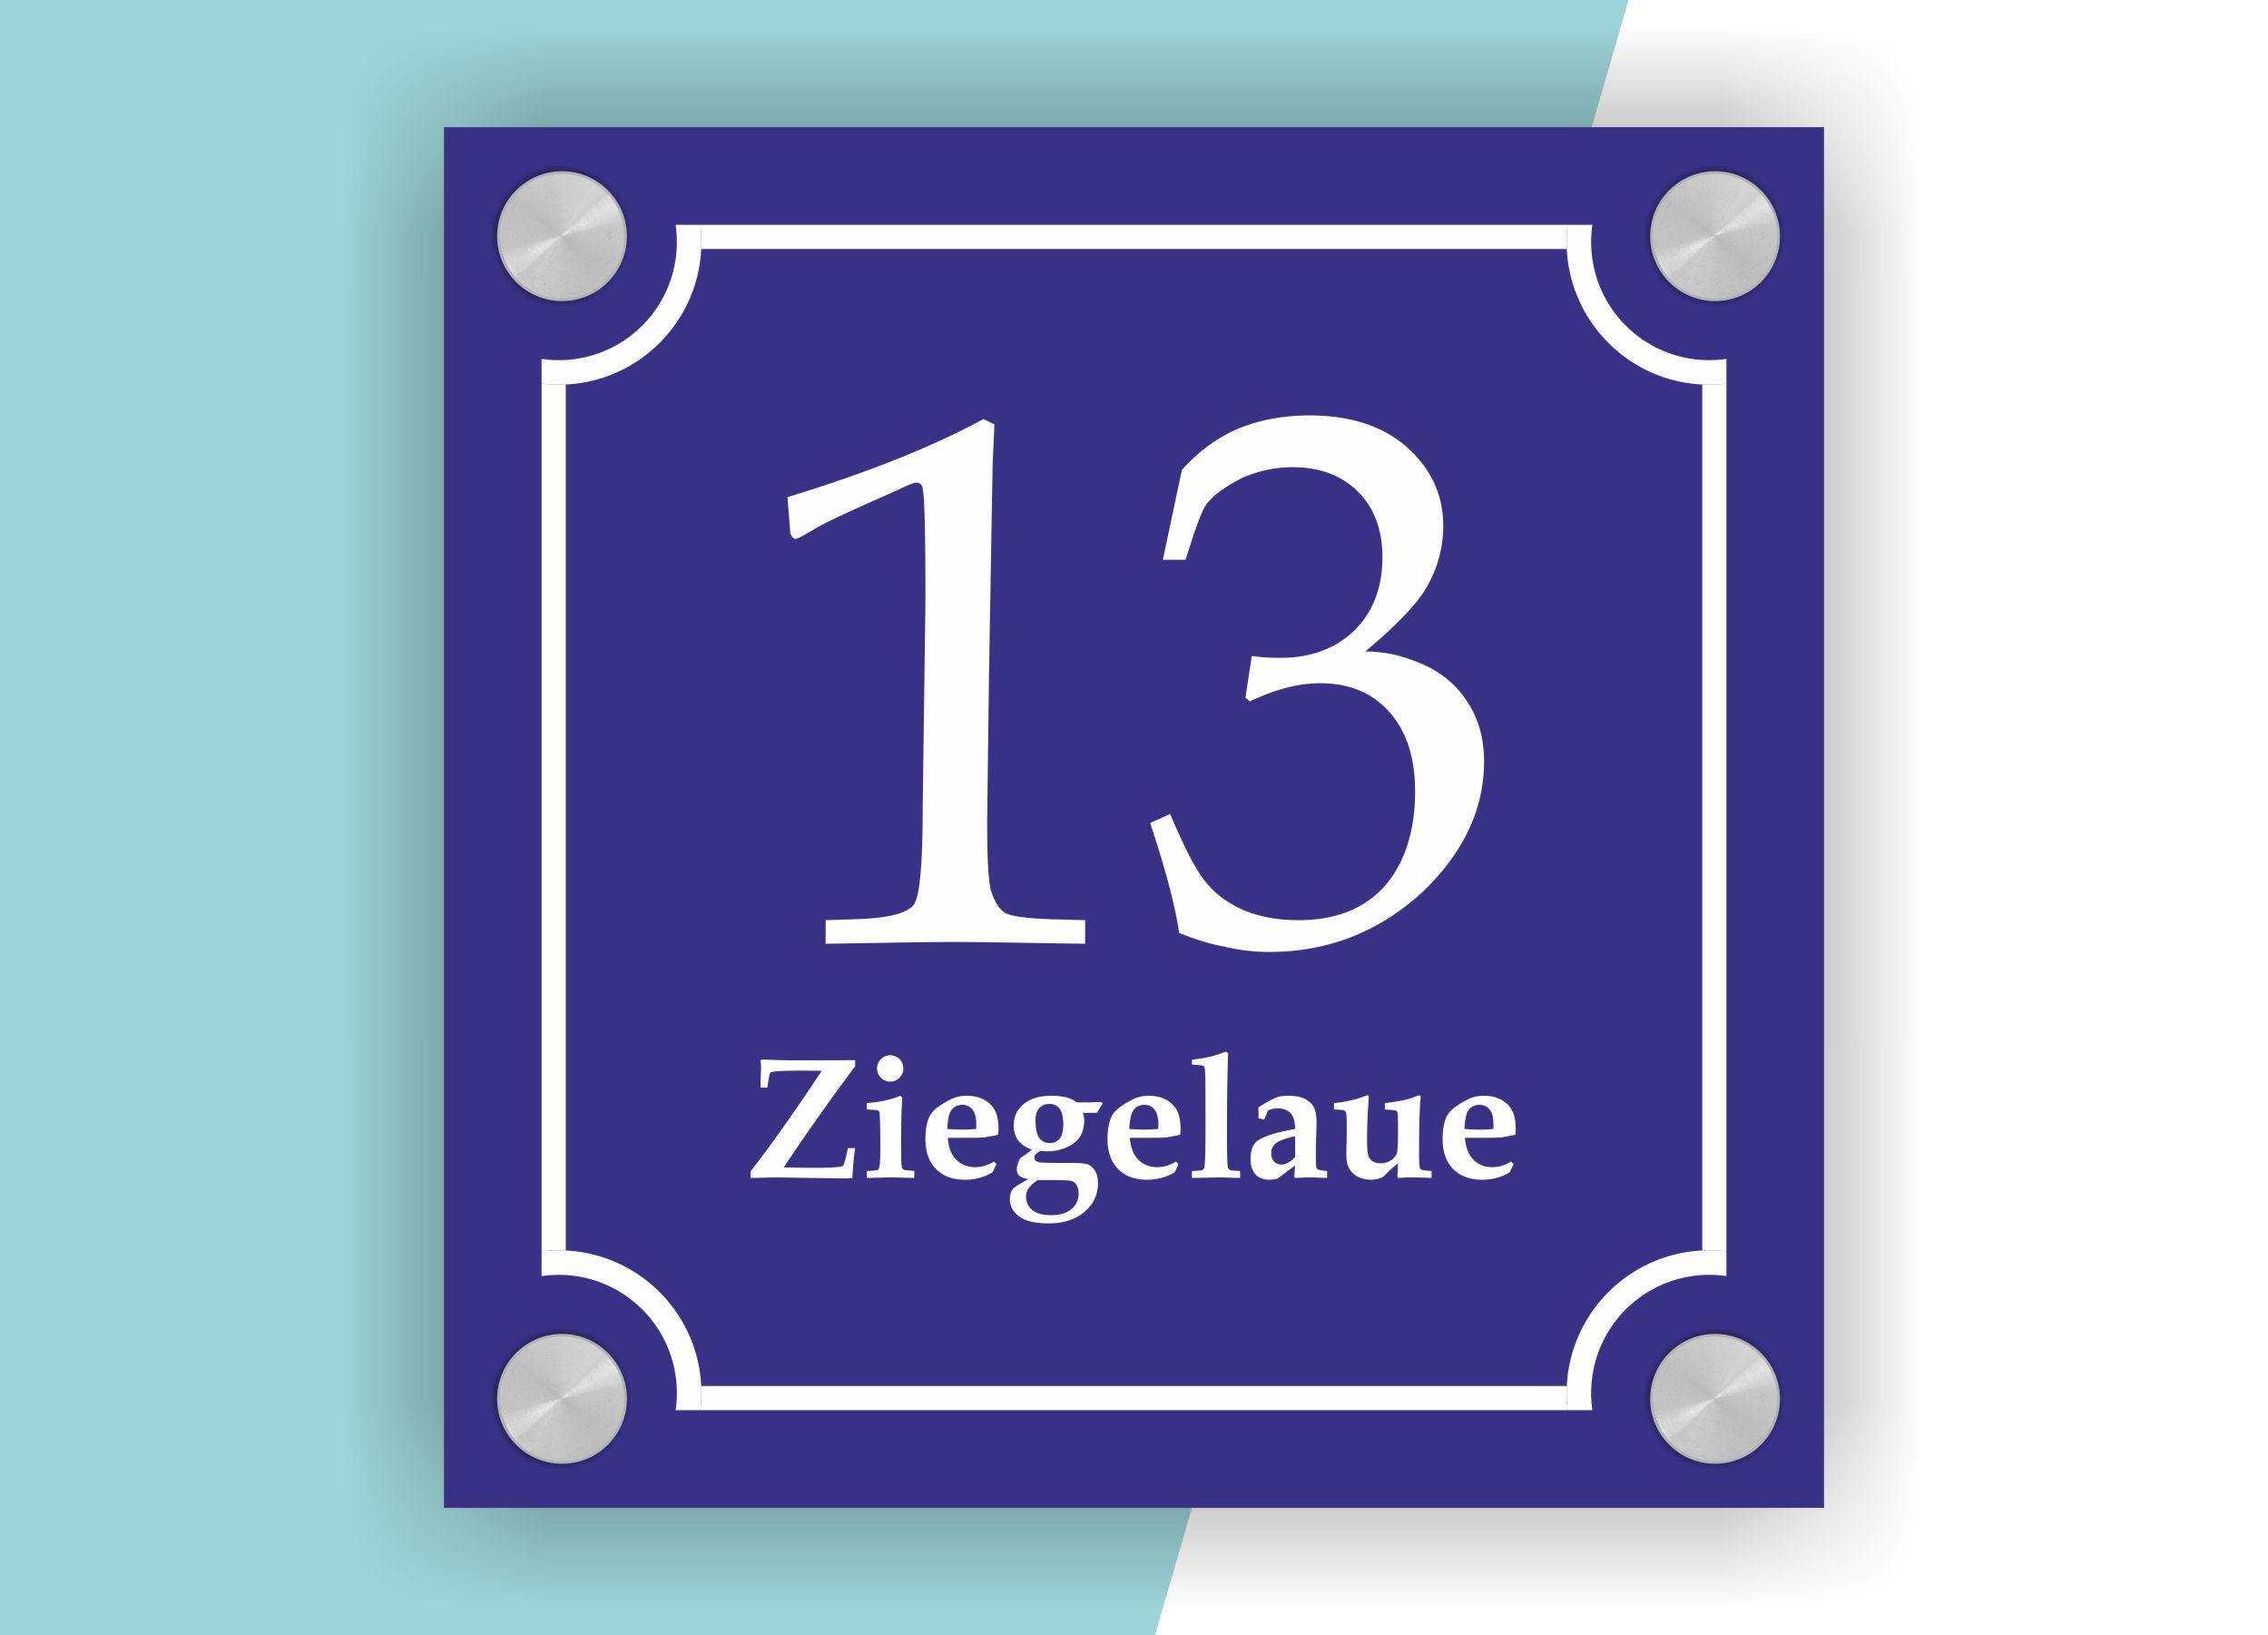 Hausnummernschild im Emaille-Design (20  ×  20 cm) — verschiedene Farben